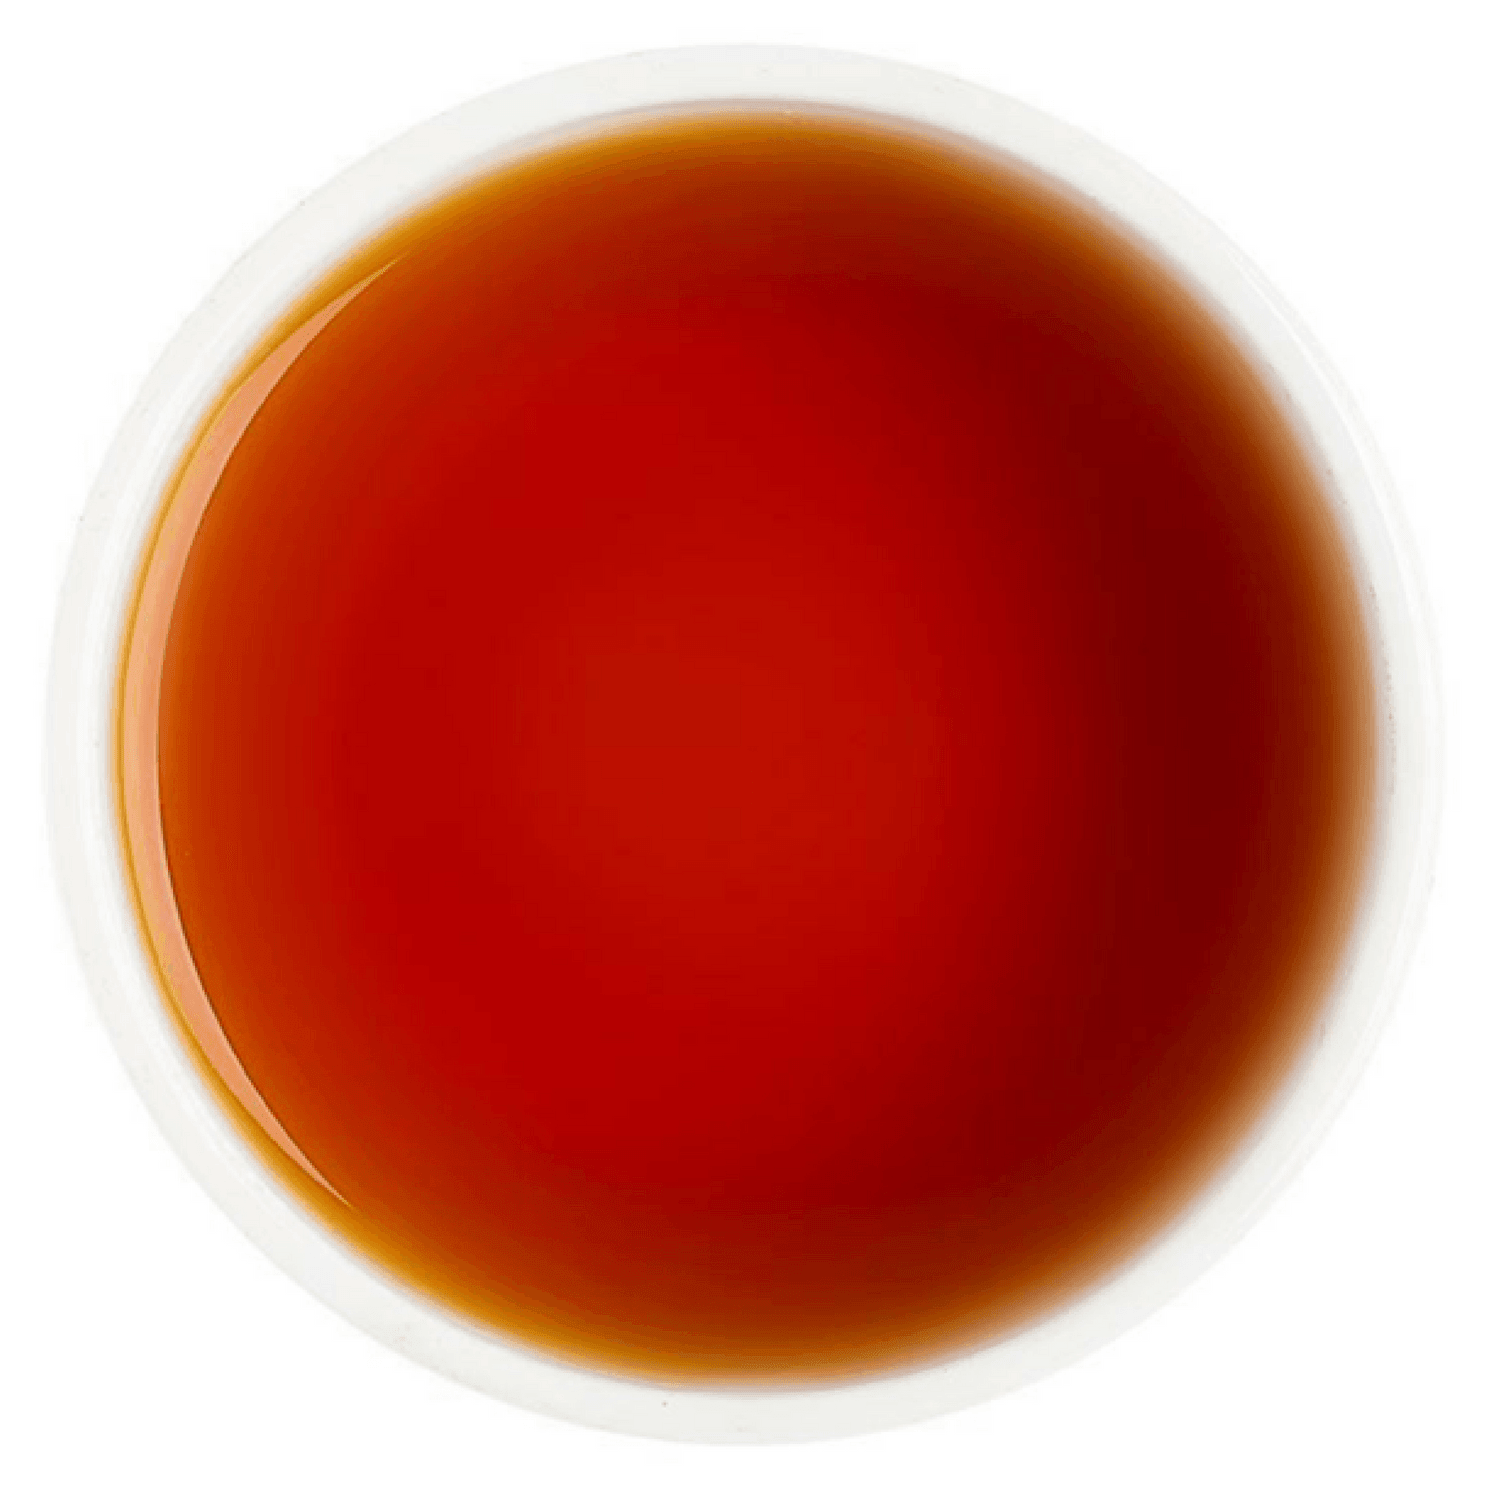 Imperial Earl Grey Tea - Tearaja